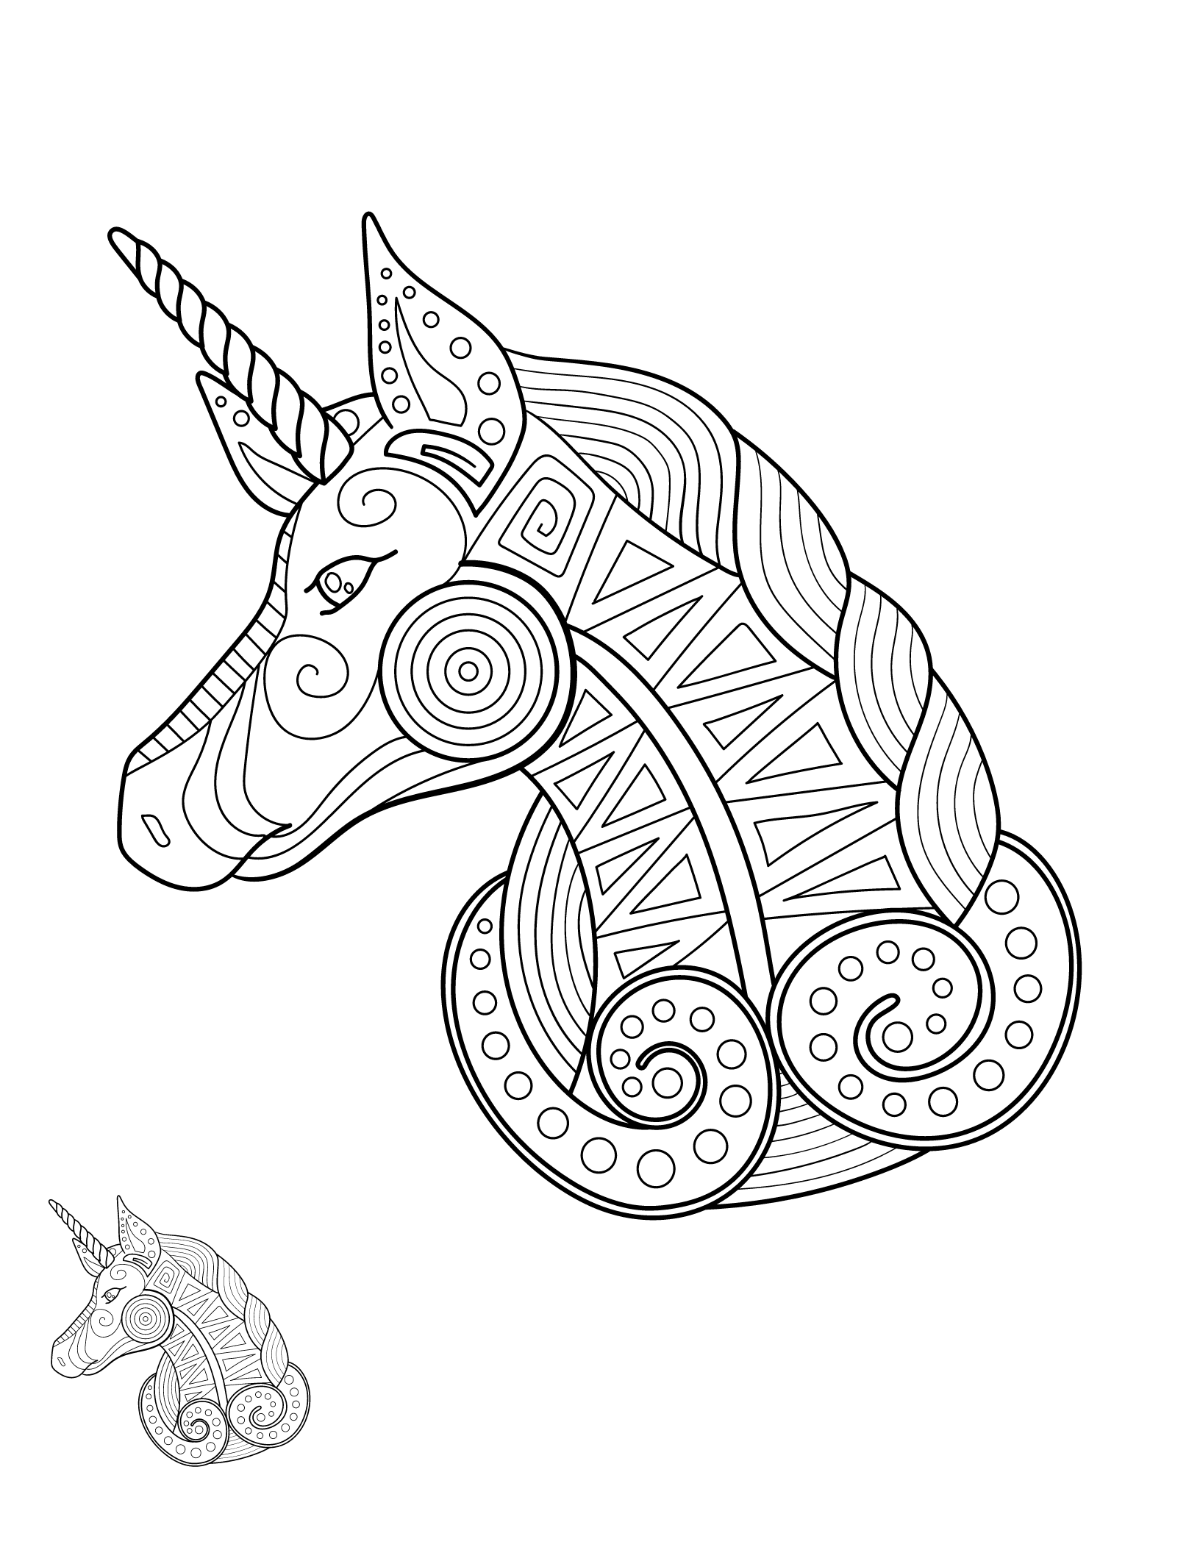 Unicorn Mandala Coloring Page